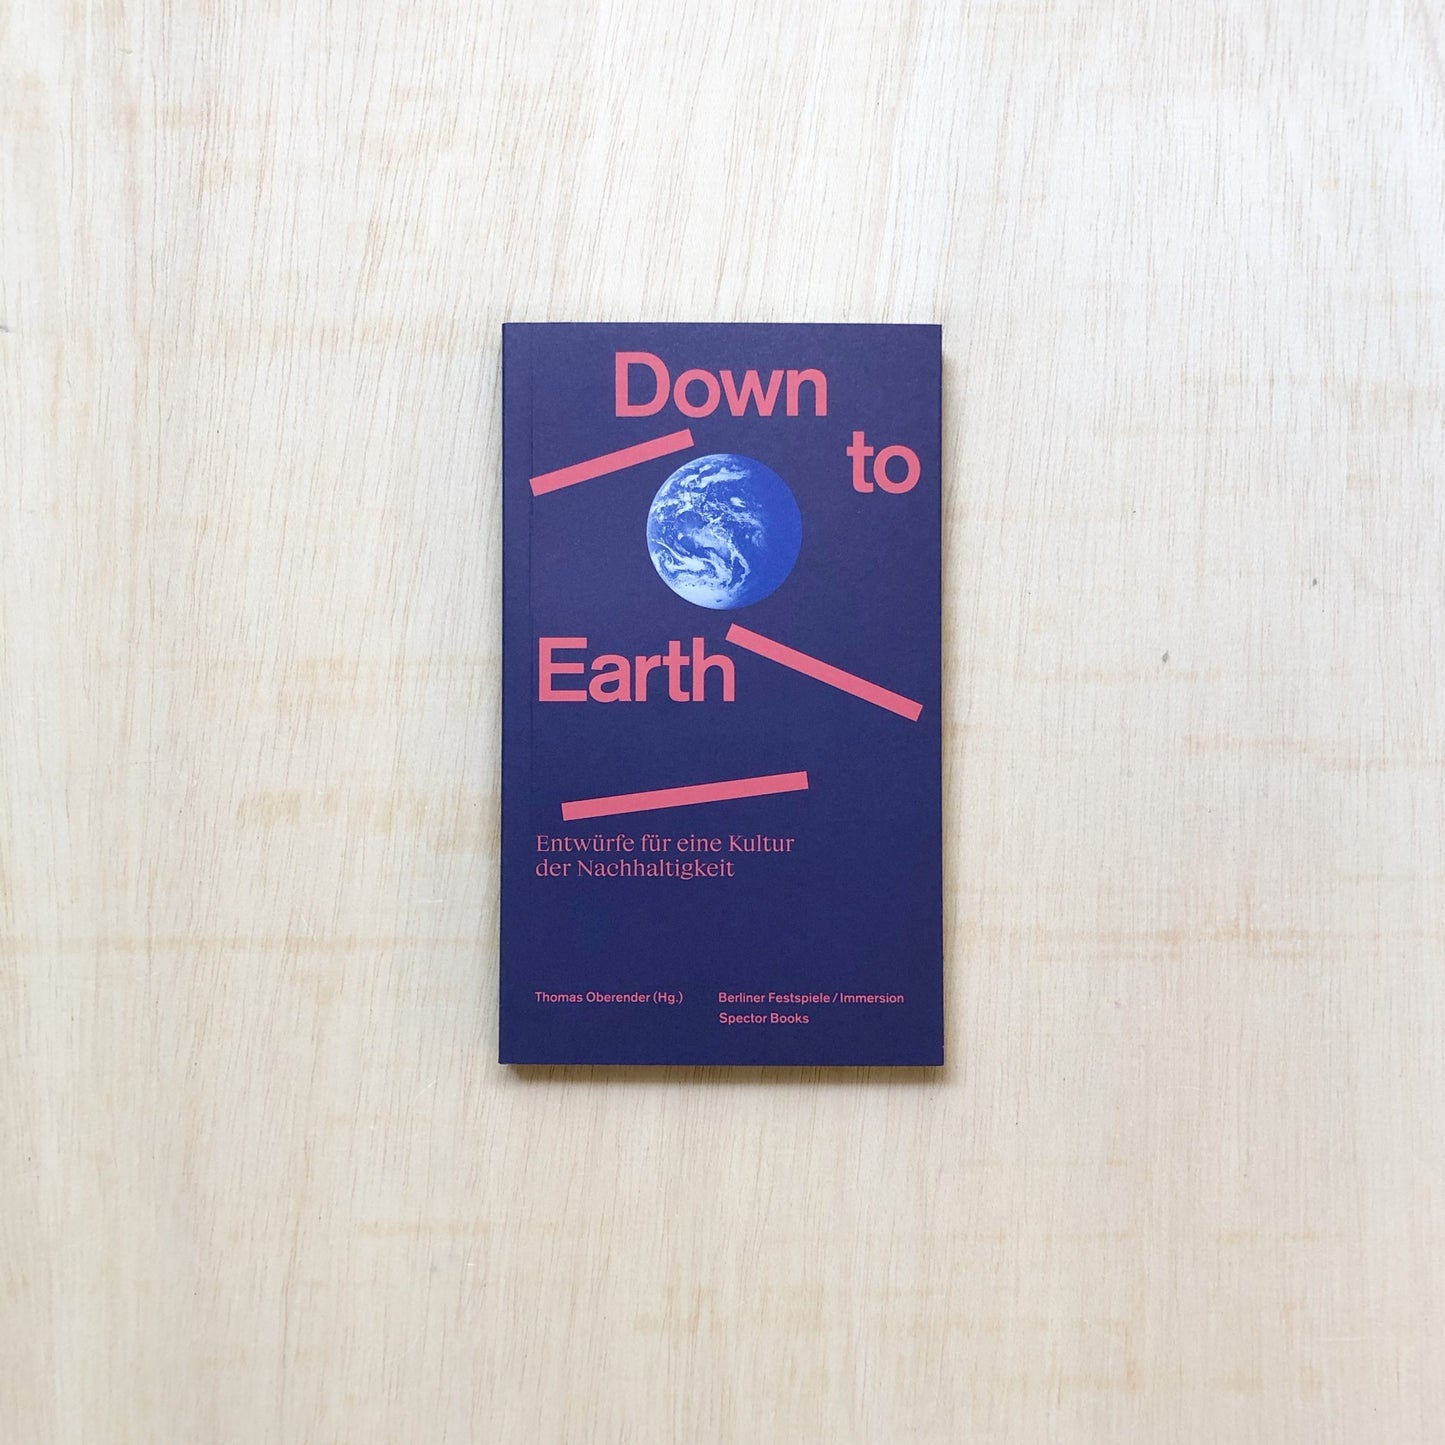 Down to Earth - Entwürfe für eine Kultur der Nachhaltigkeit